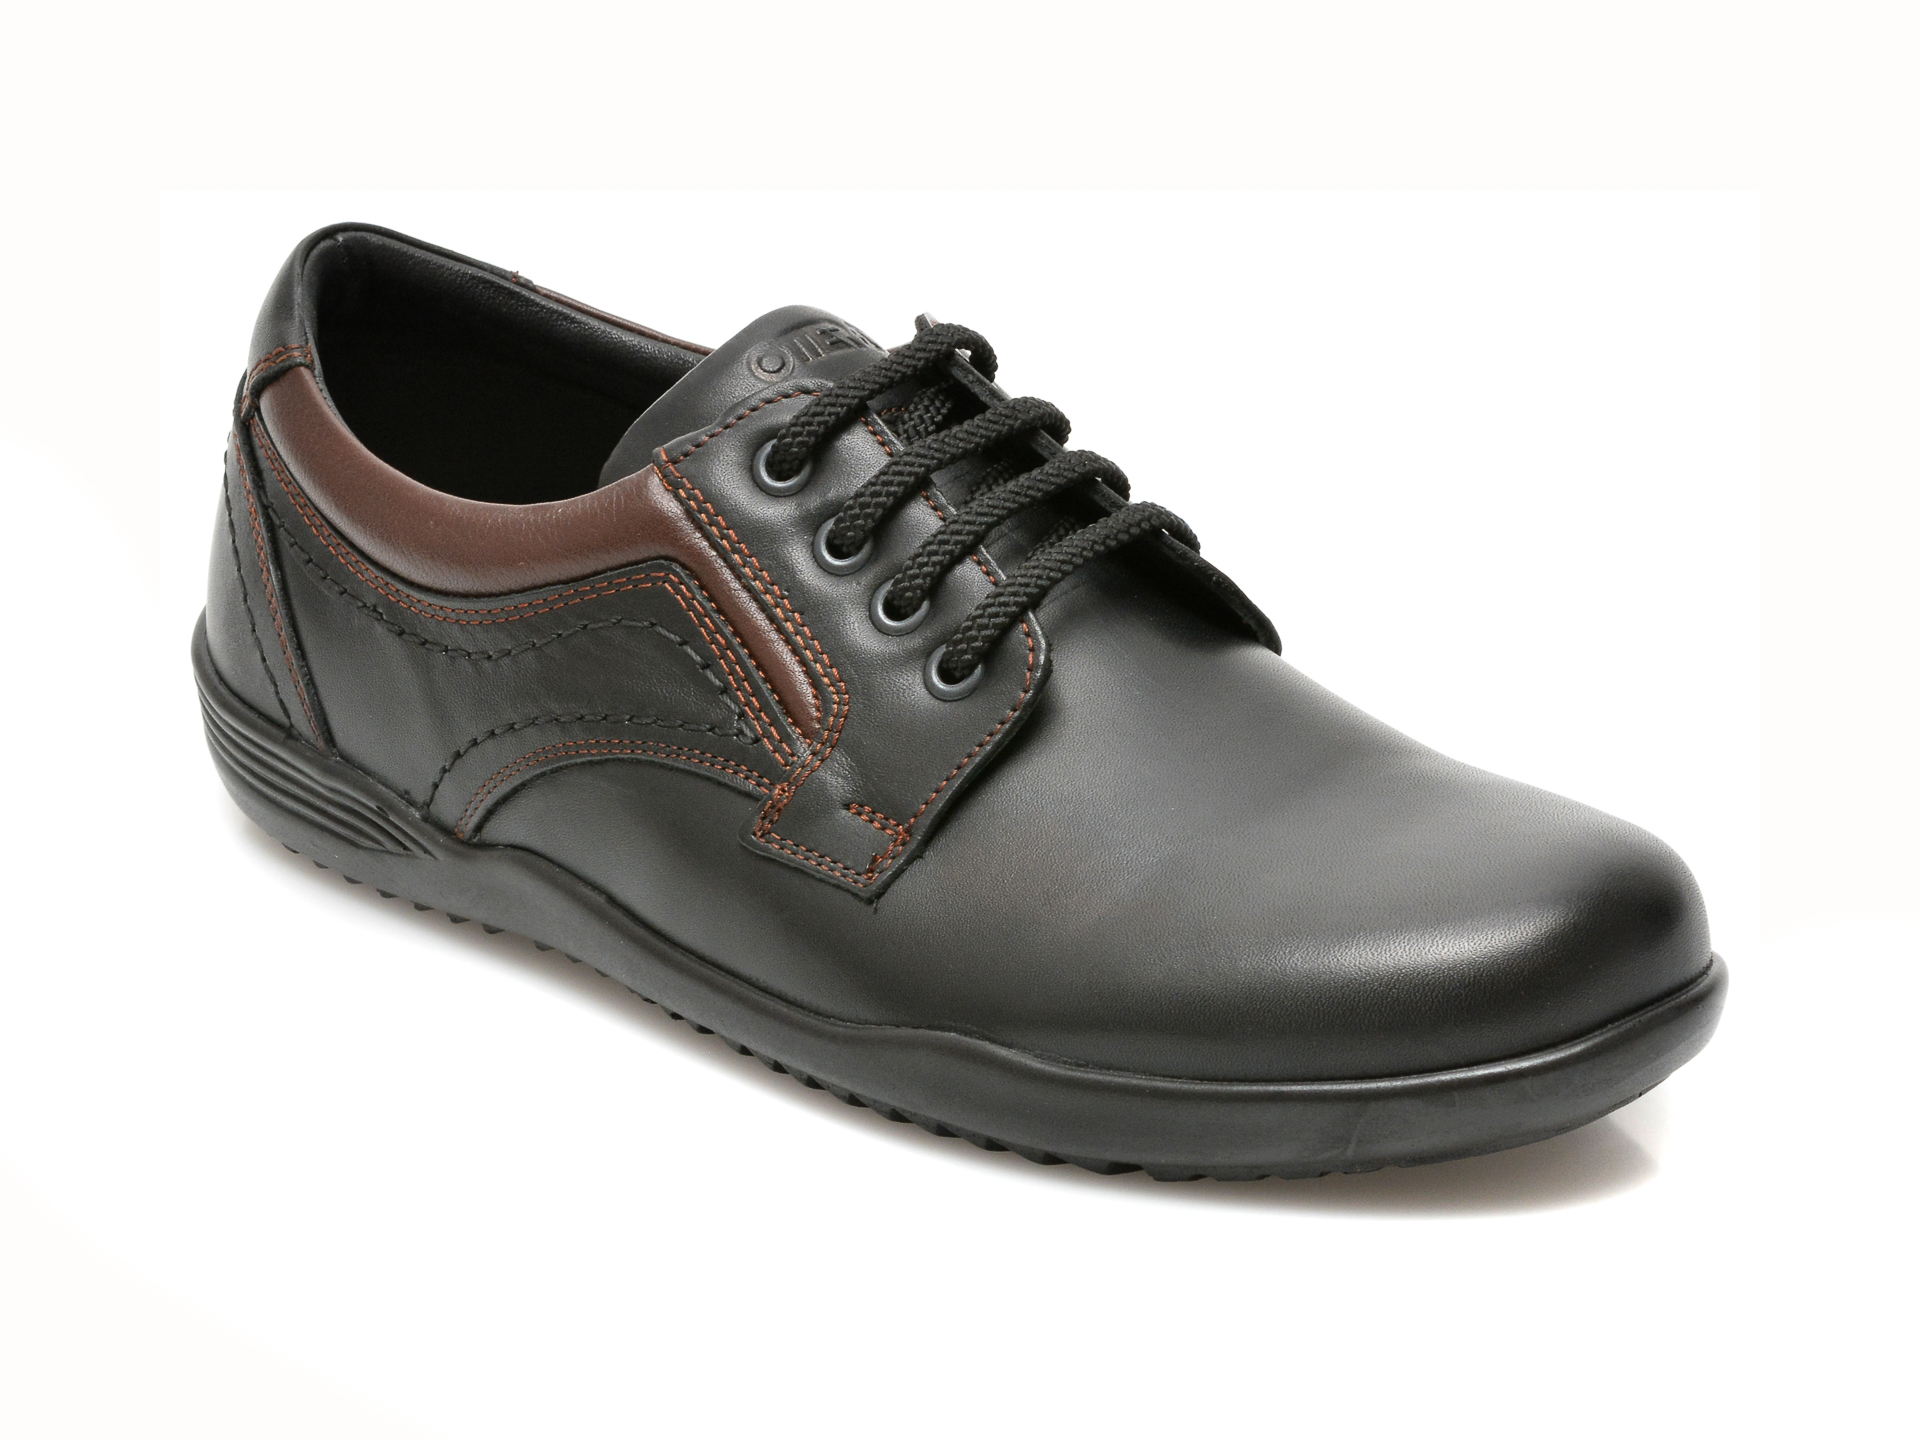 Pantofi OTTER negri, 221, din piele naturala Otter poza reduceri 2021